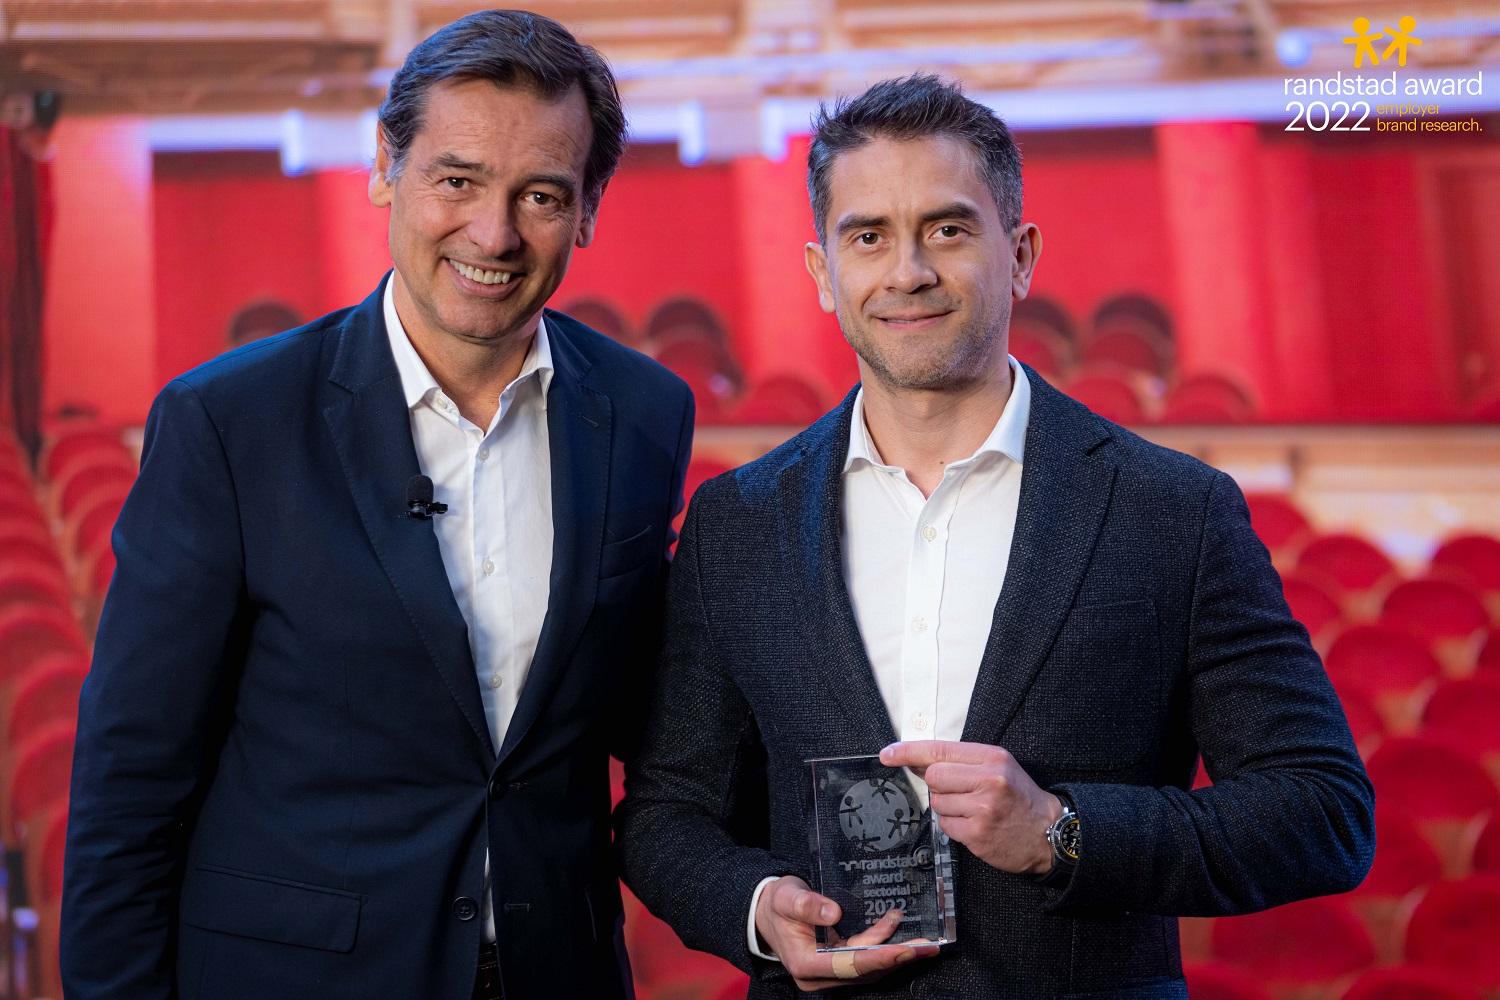 Juan Gelves dcha responsable de Talento y Transformación Cultural de Nestlé España ha recogido el premio Randstad